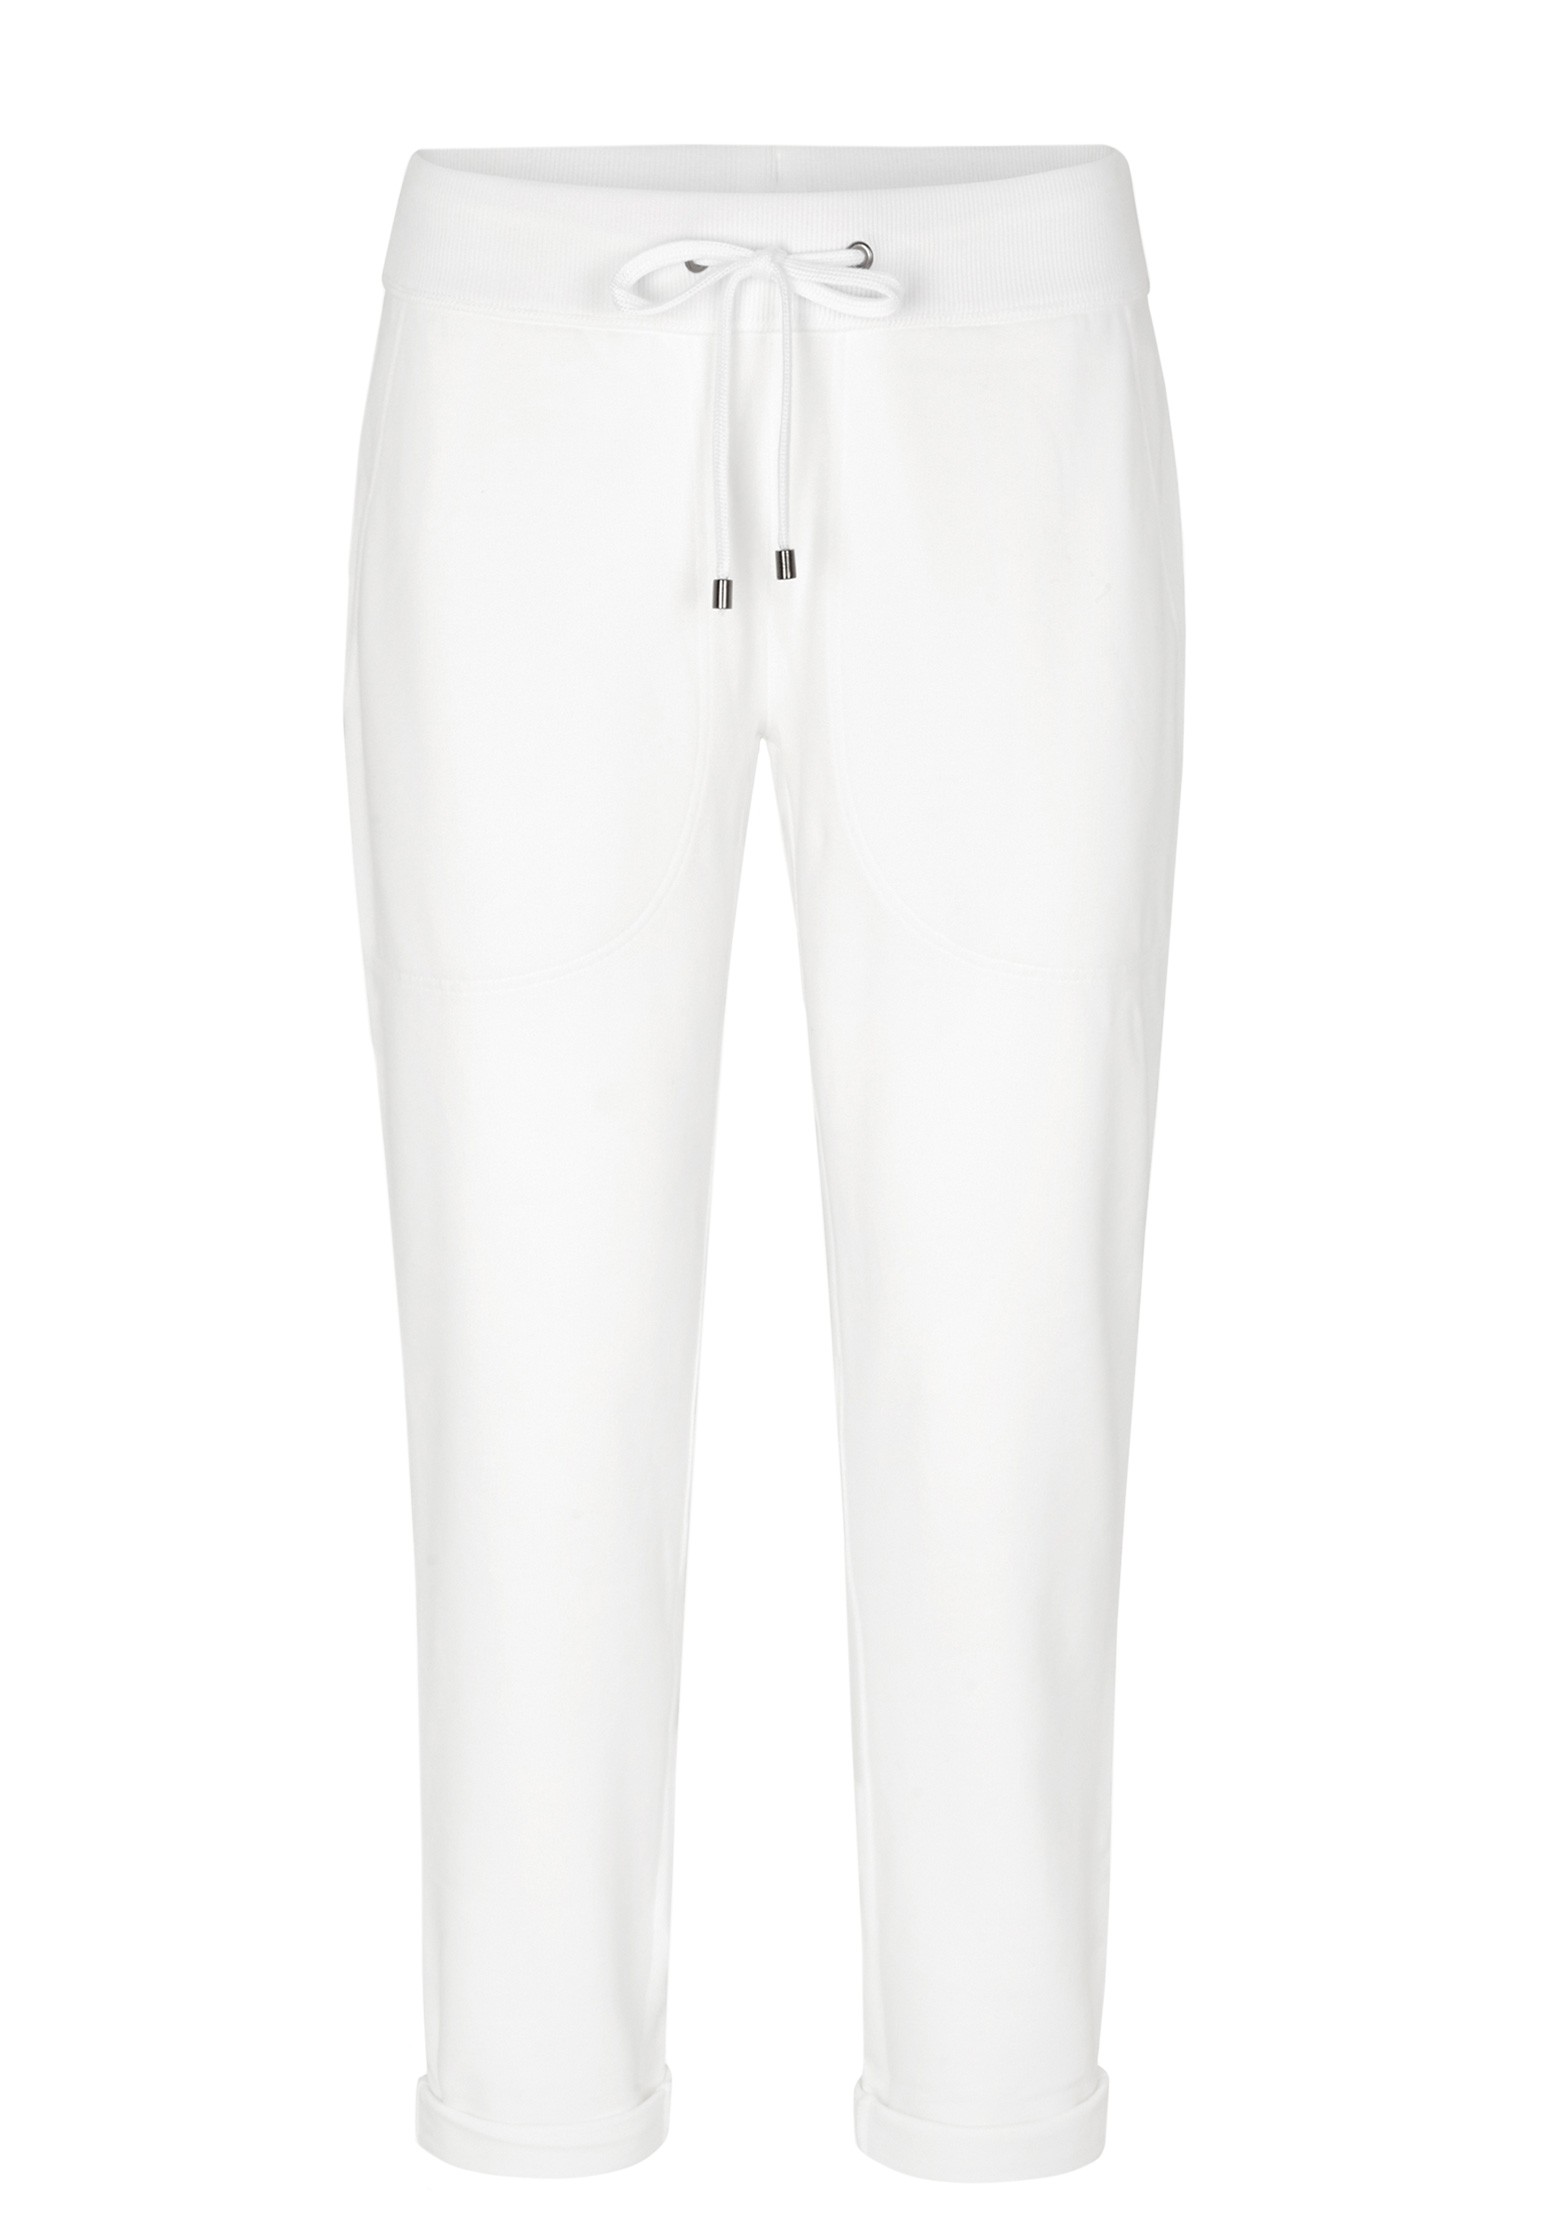 фото Спортивные брюки женские juvia 124841 белые s